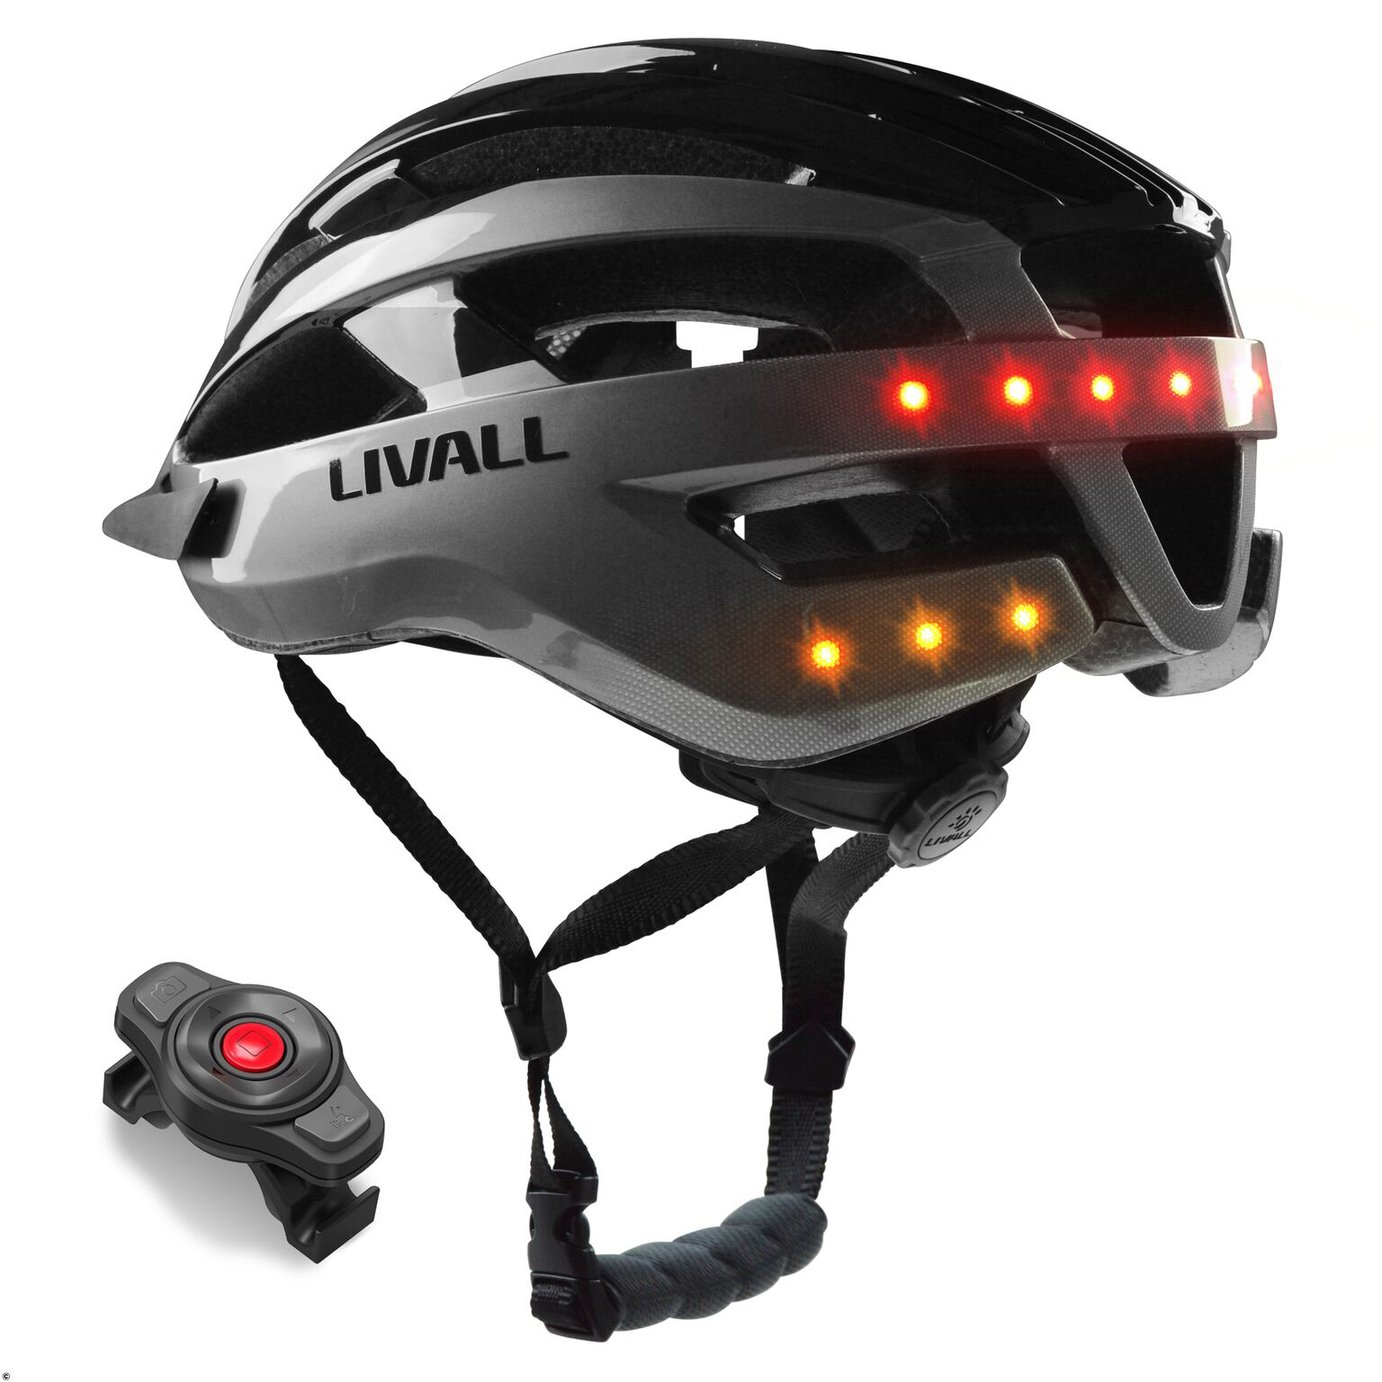 Livall MT1 Unisex Mountain Bike Smart Helmet review